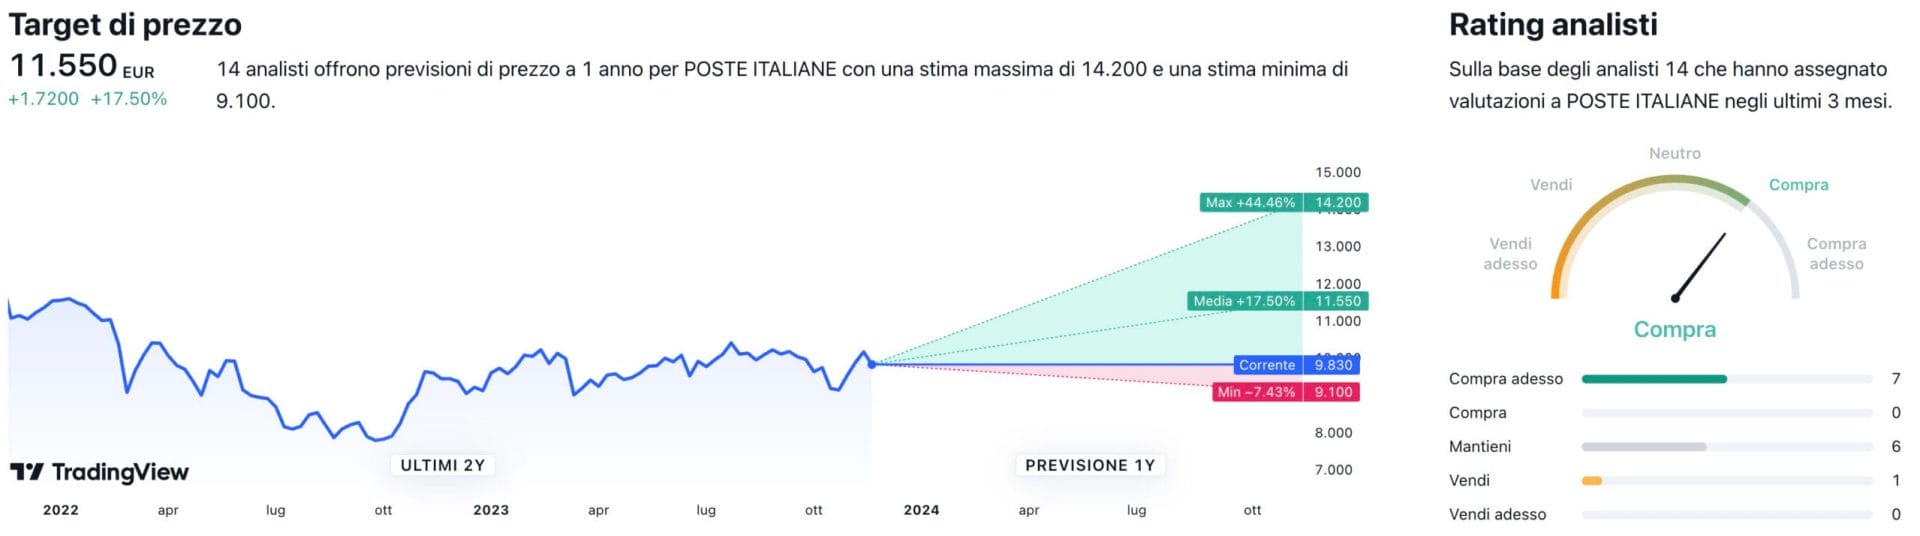 Target di prezzo a un anno e raccomandazioni degli analisti per il titolo Poste Italiane